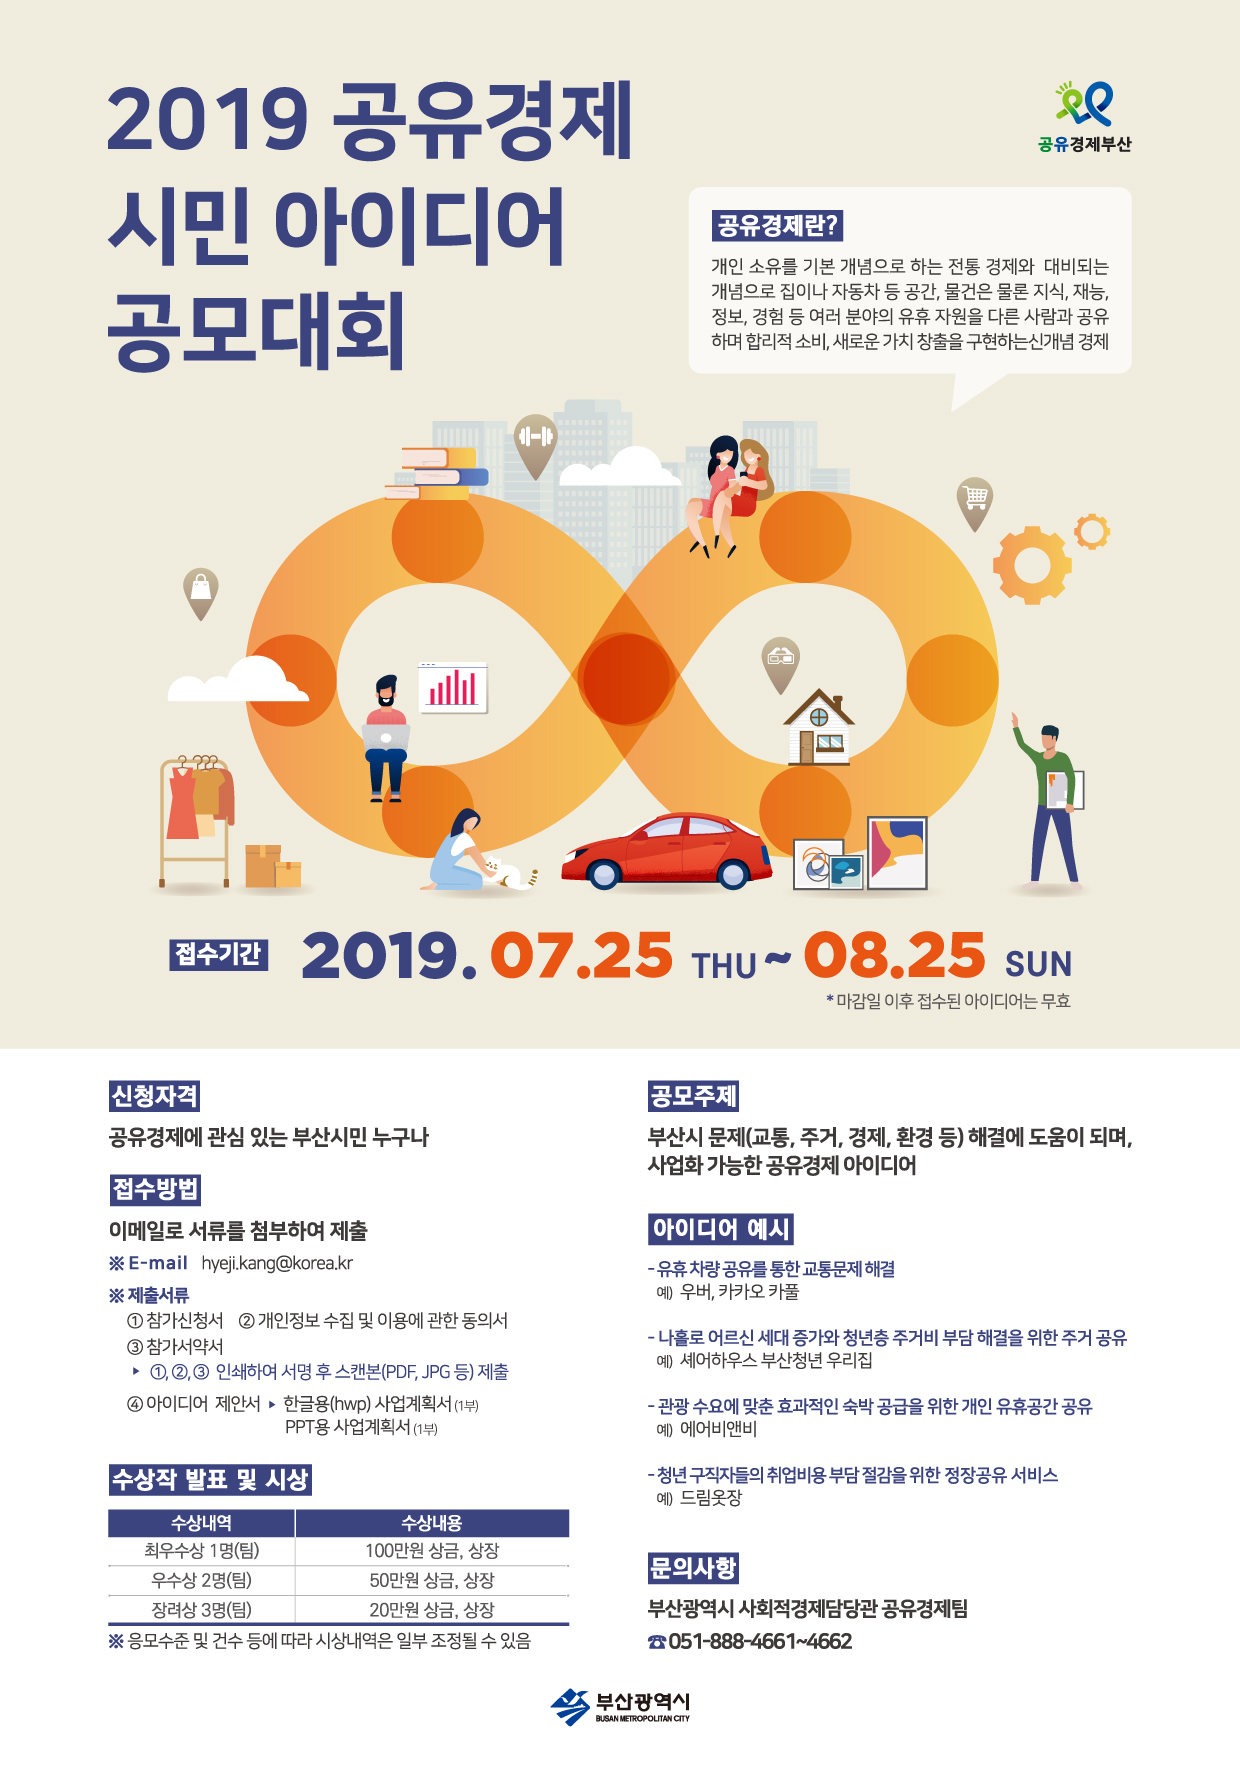 2019 공유경제 시민 아이디어 공모대회 개최 안내